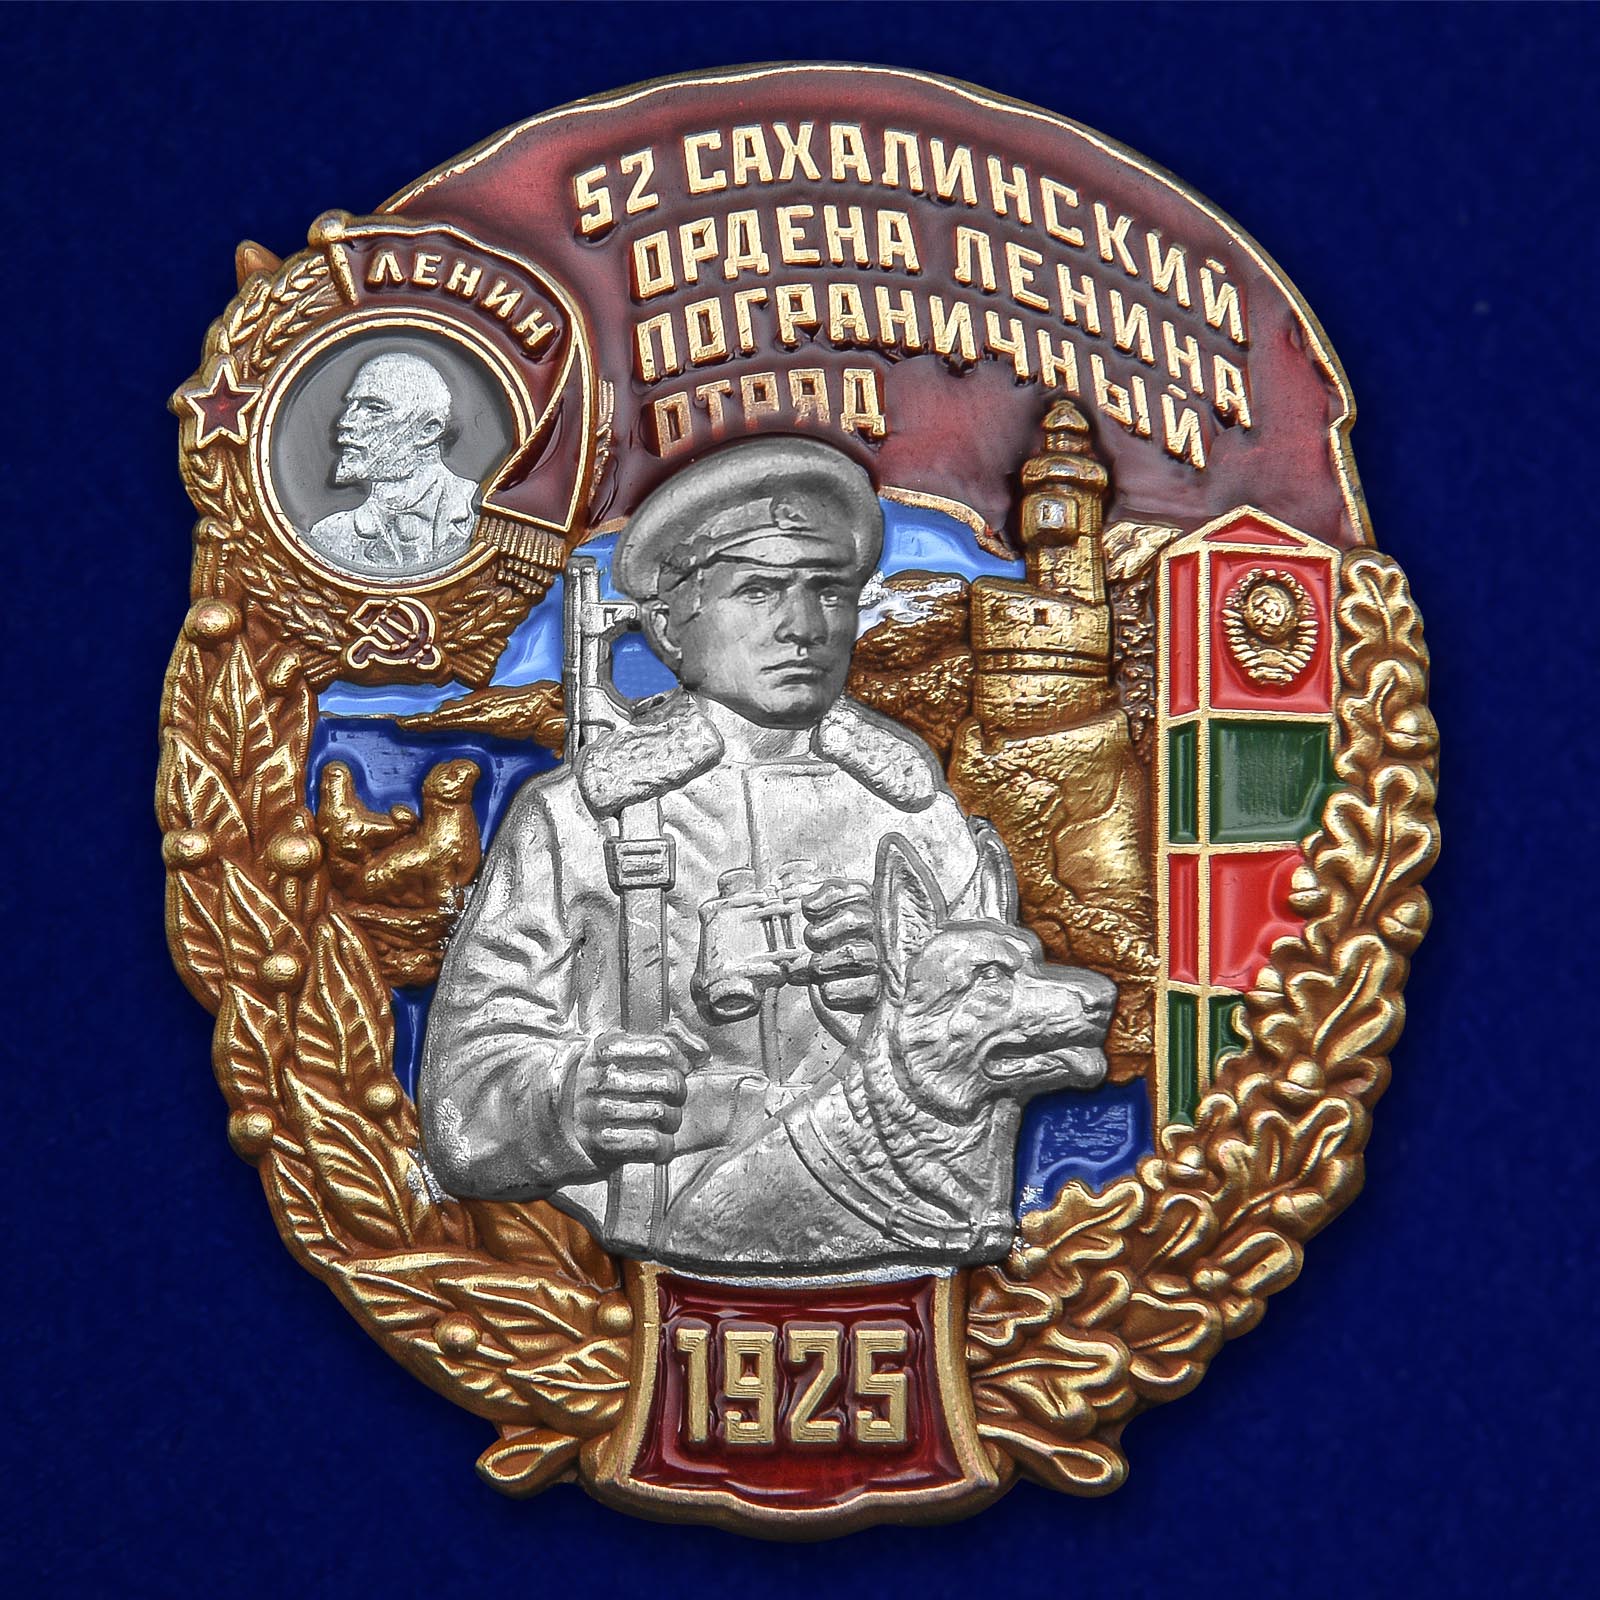 Купить знак 52 Сахалинский ордена Ленина Пограничный отряд на подставке выгодно